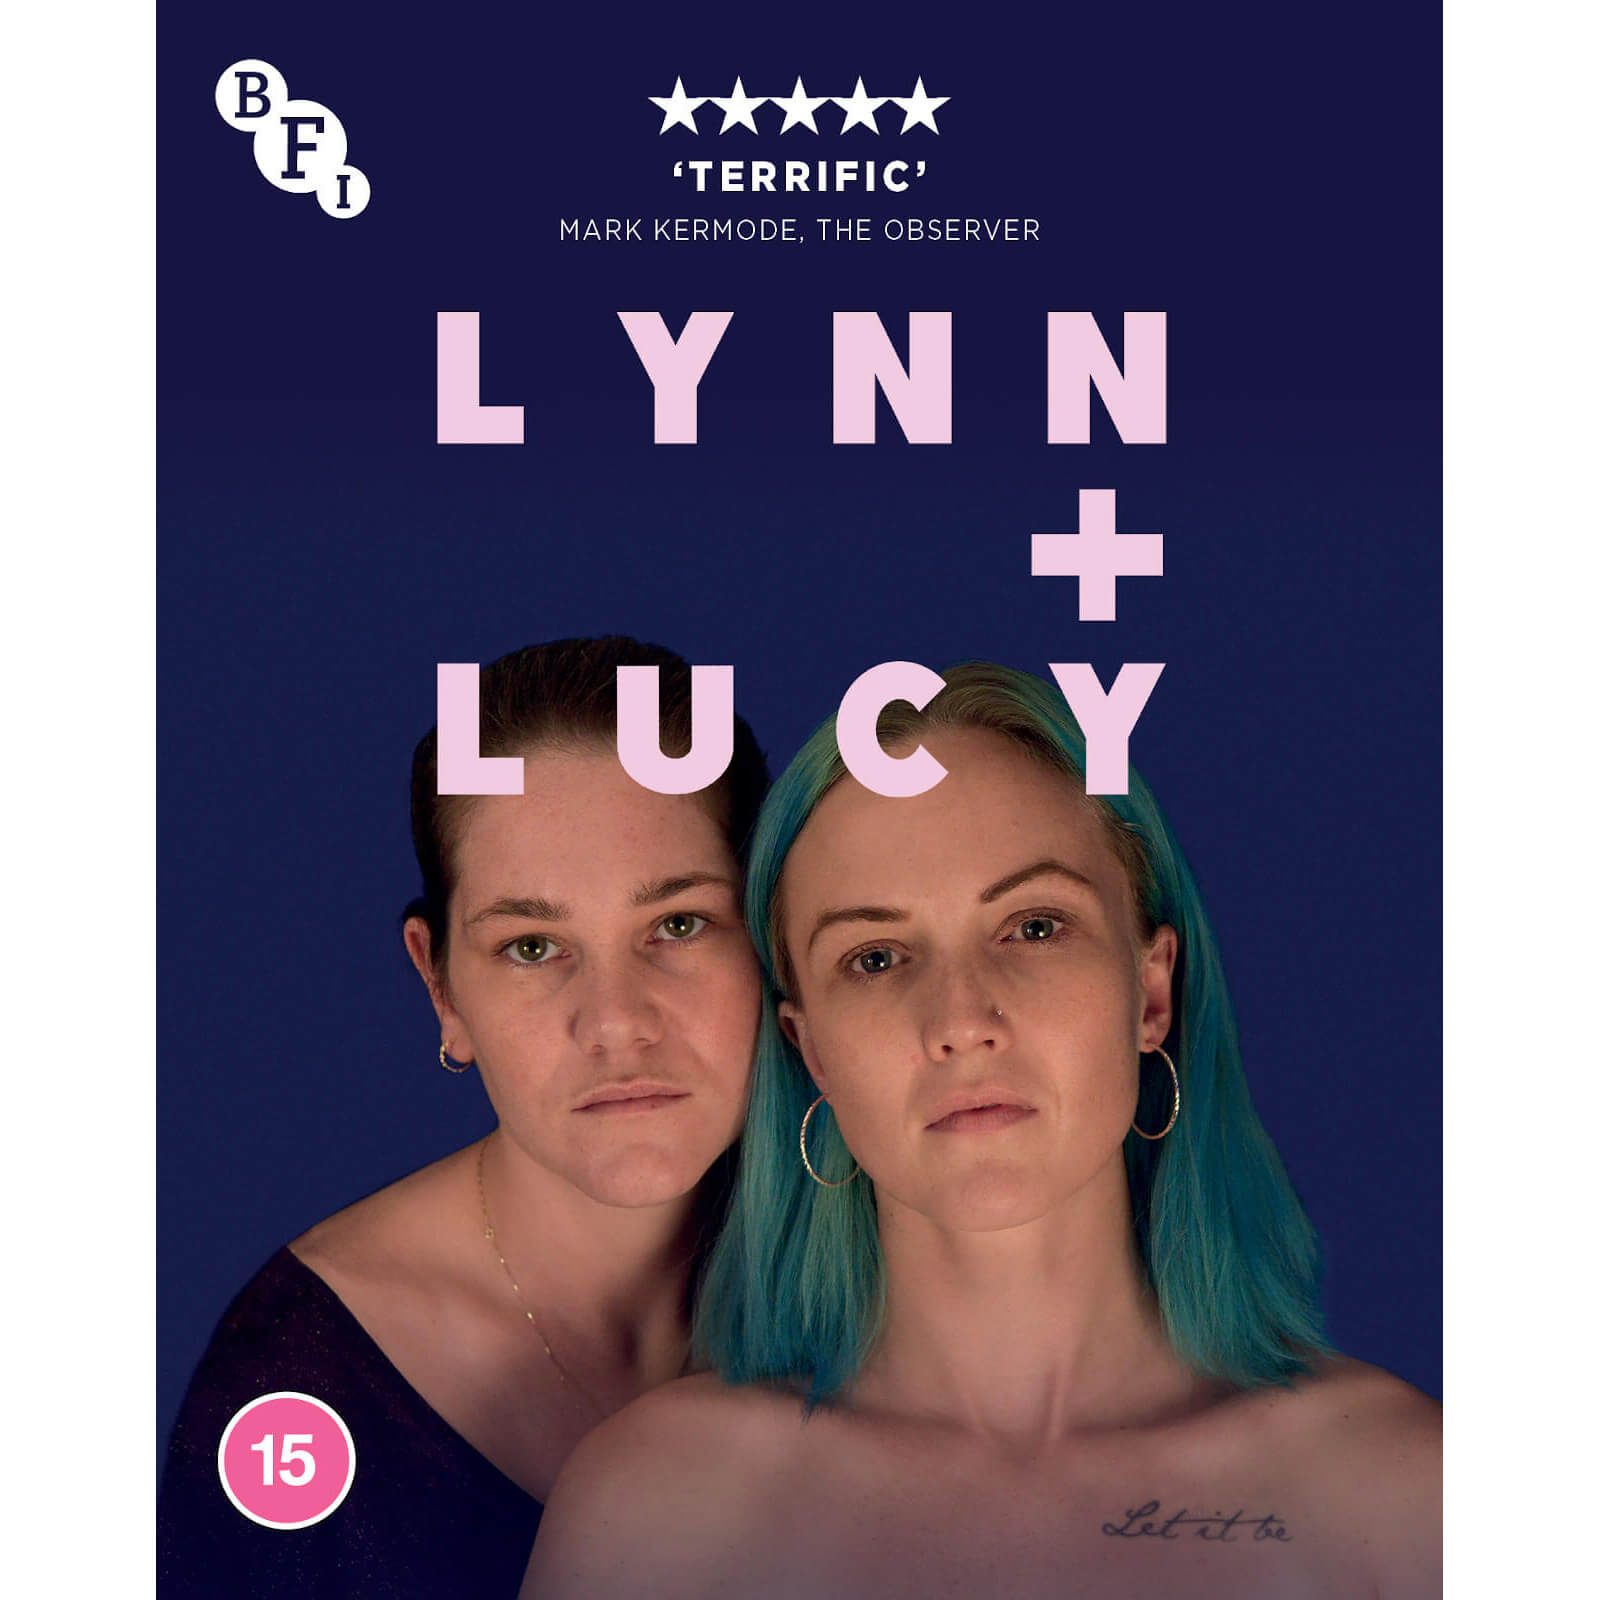 

Lynn + Lucy